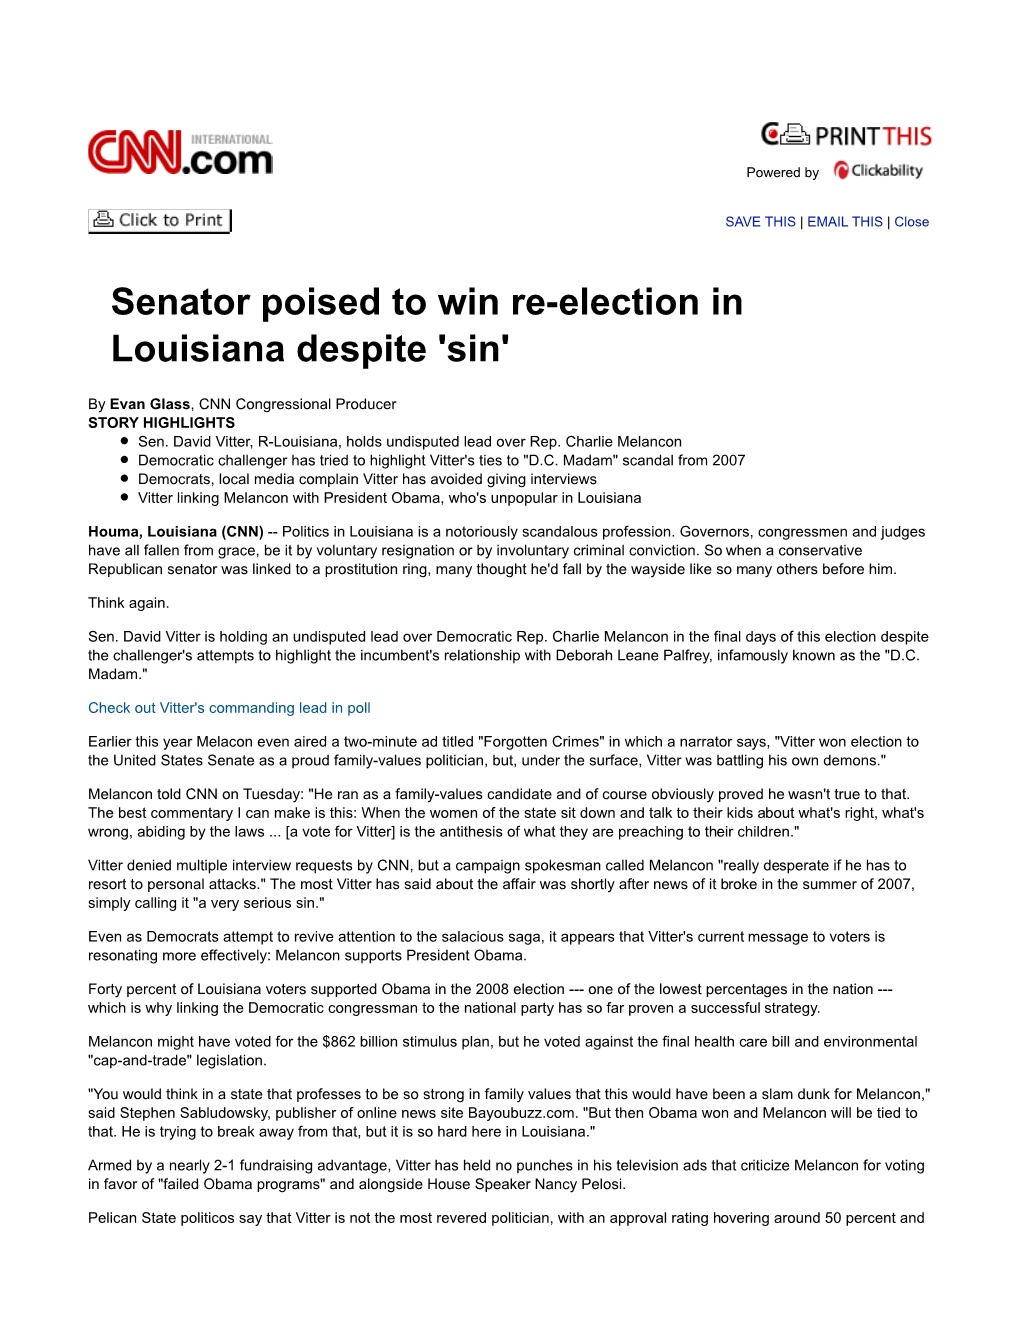 Senator Poised to Win Re-Election in Louisiana Despite 'Sin'